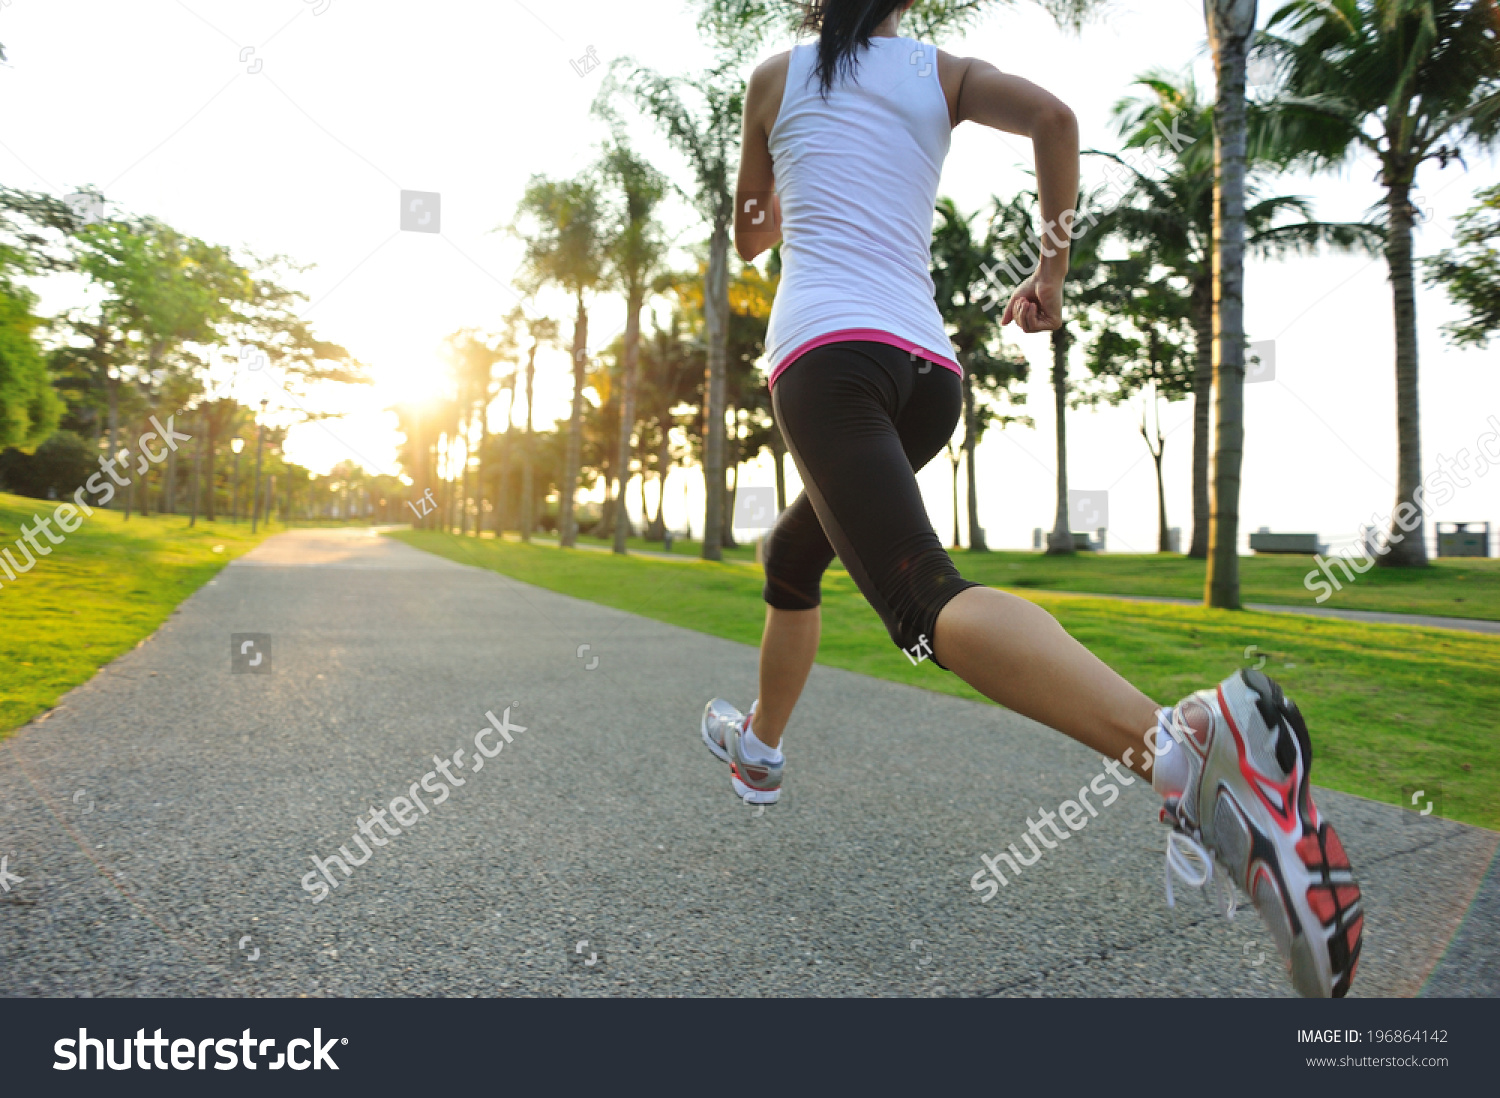 女跑者不要害羞，跑步走光是常态 -6park.com